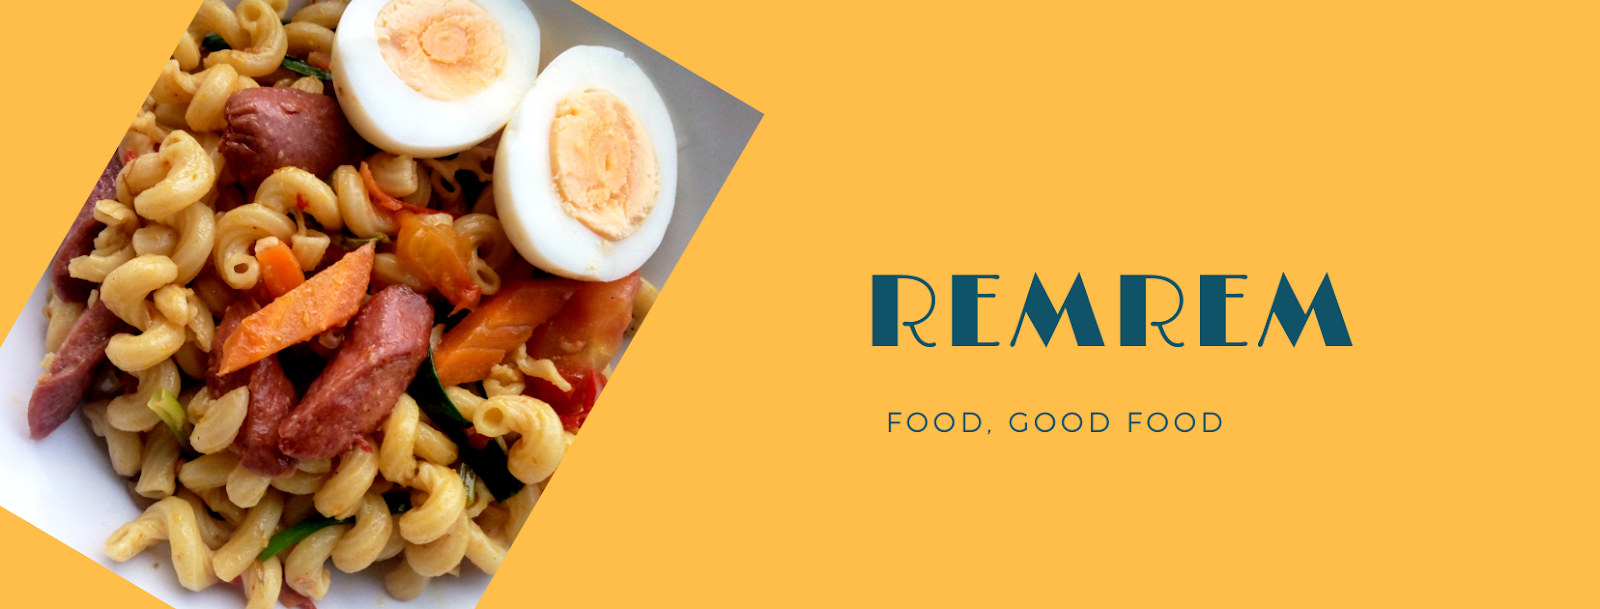 RemRem's Food Blog